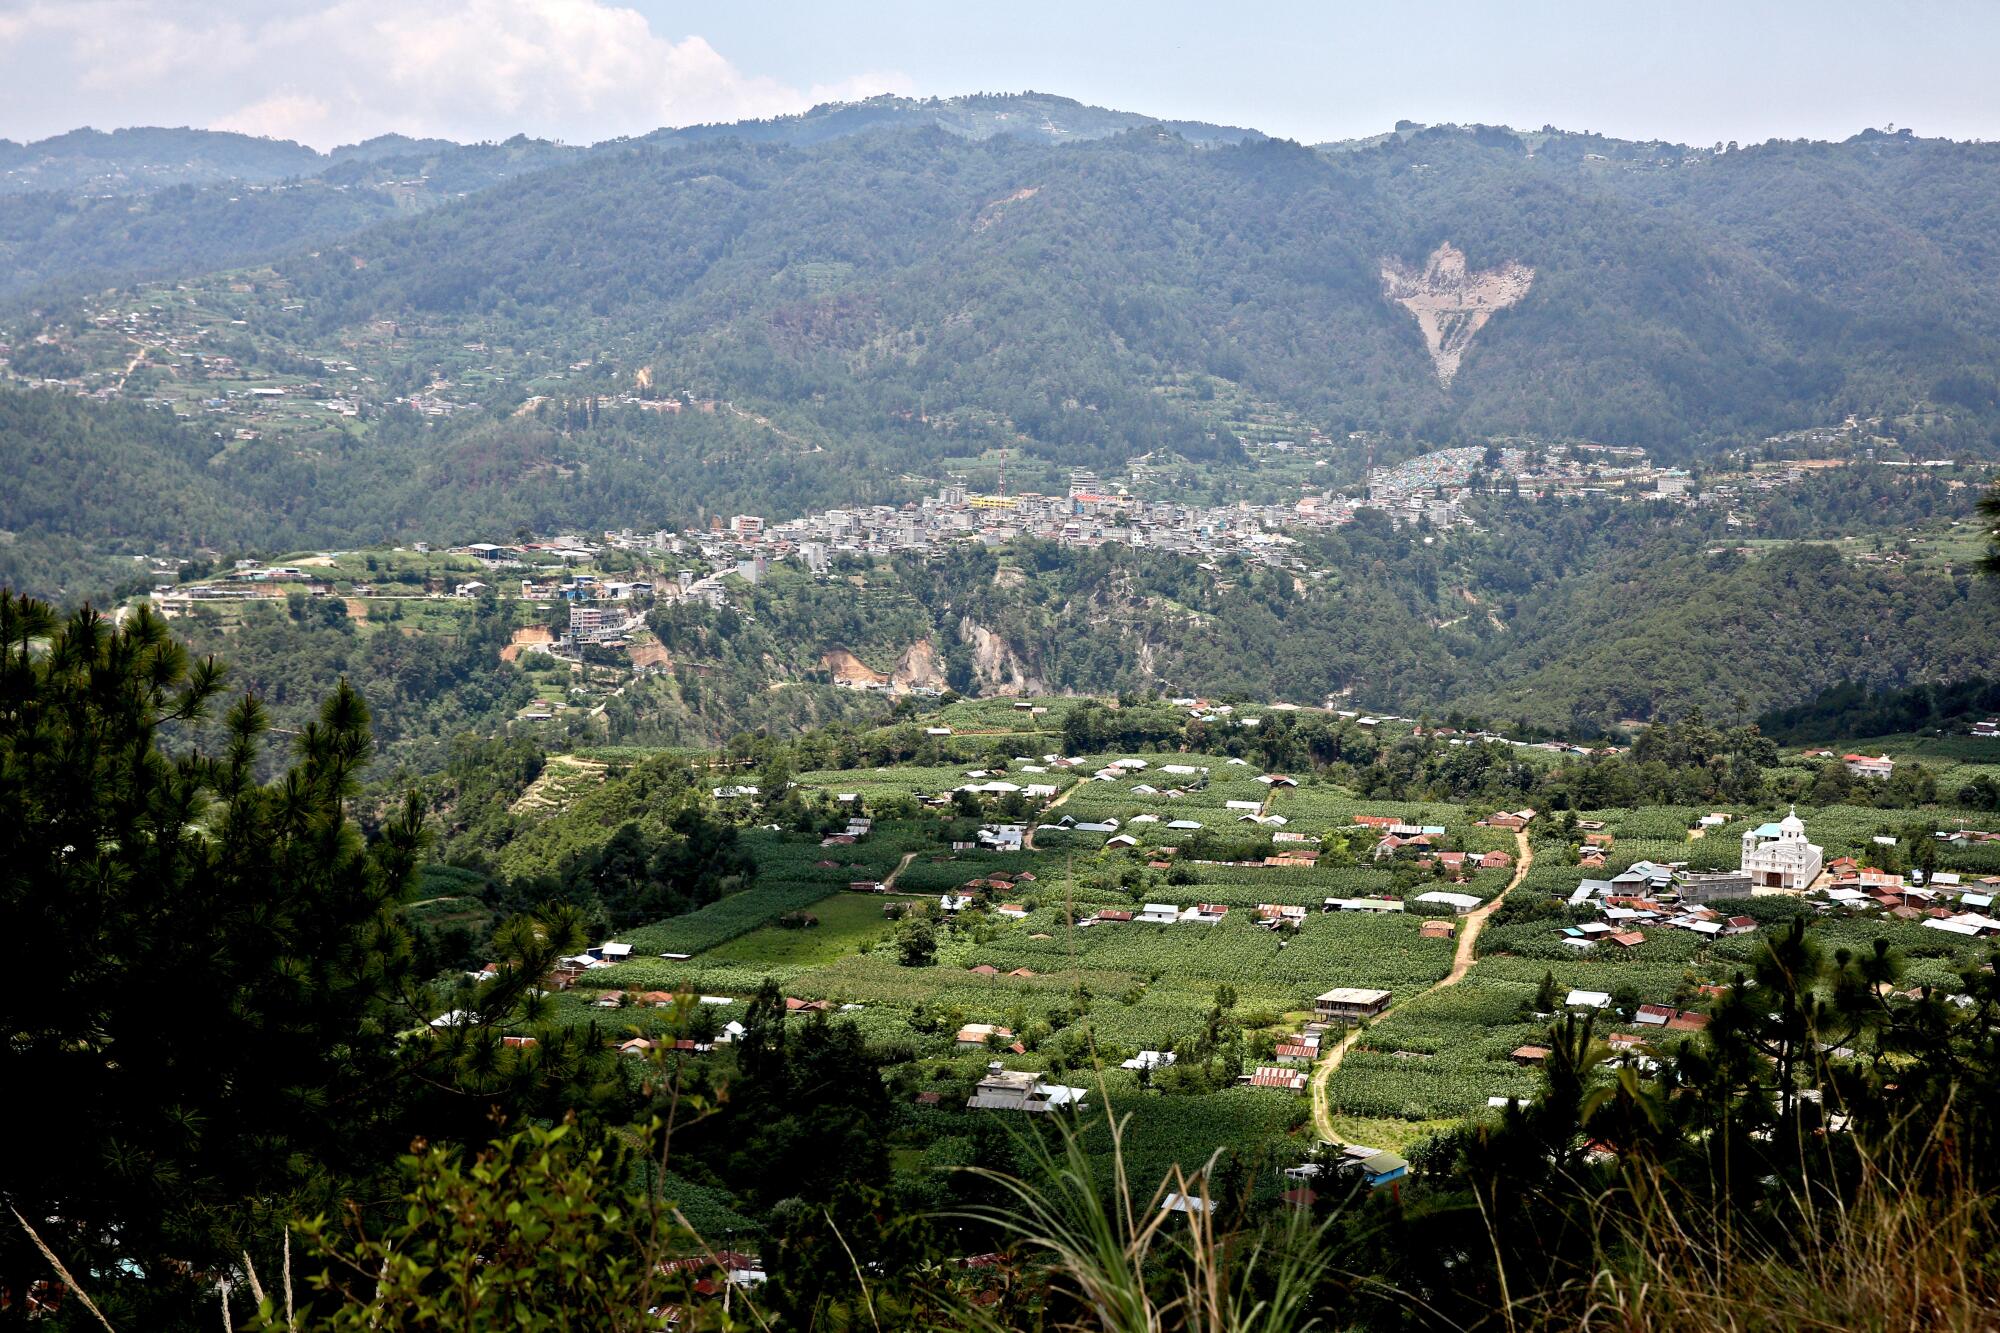 El municipio de Comitancillo se encuentra en una zona montañosa del departamento de San Marcos